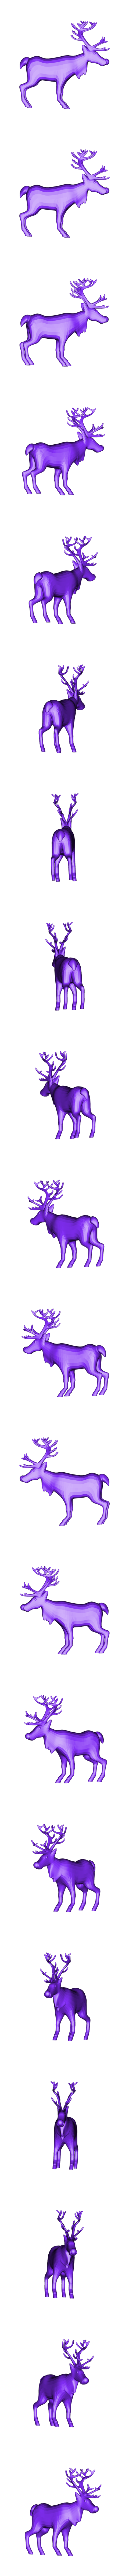 CreativeTools.se_-_ZPrinter-model_-_Reindeer.stl Download free STL file Reindeer • 3D printable model, CreativeTools